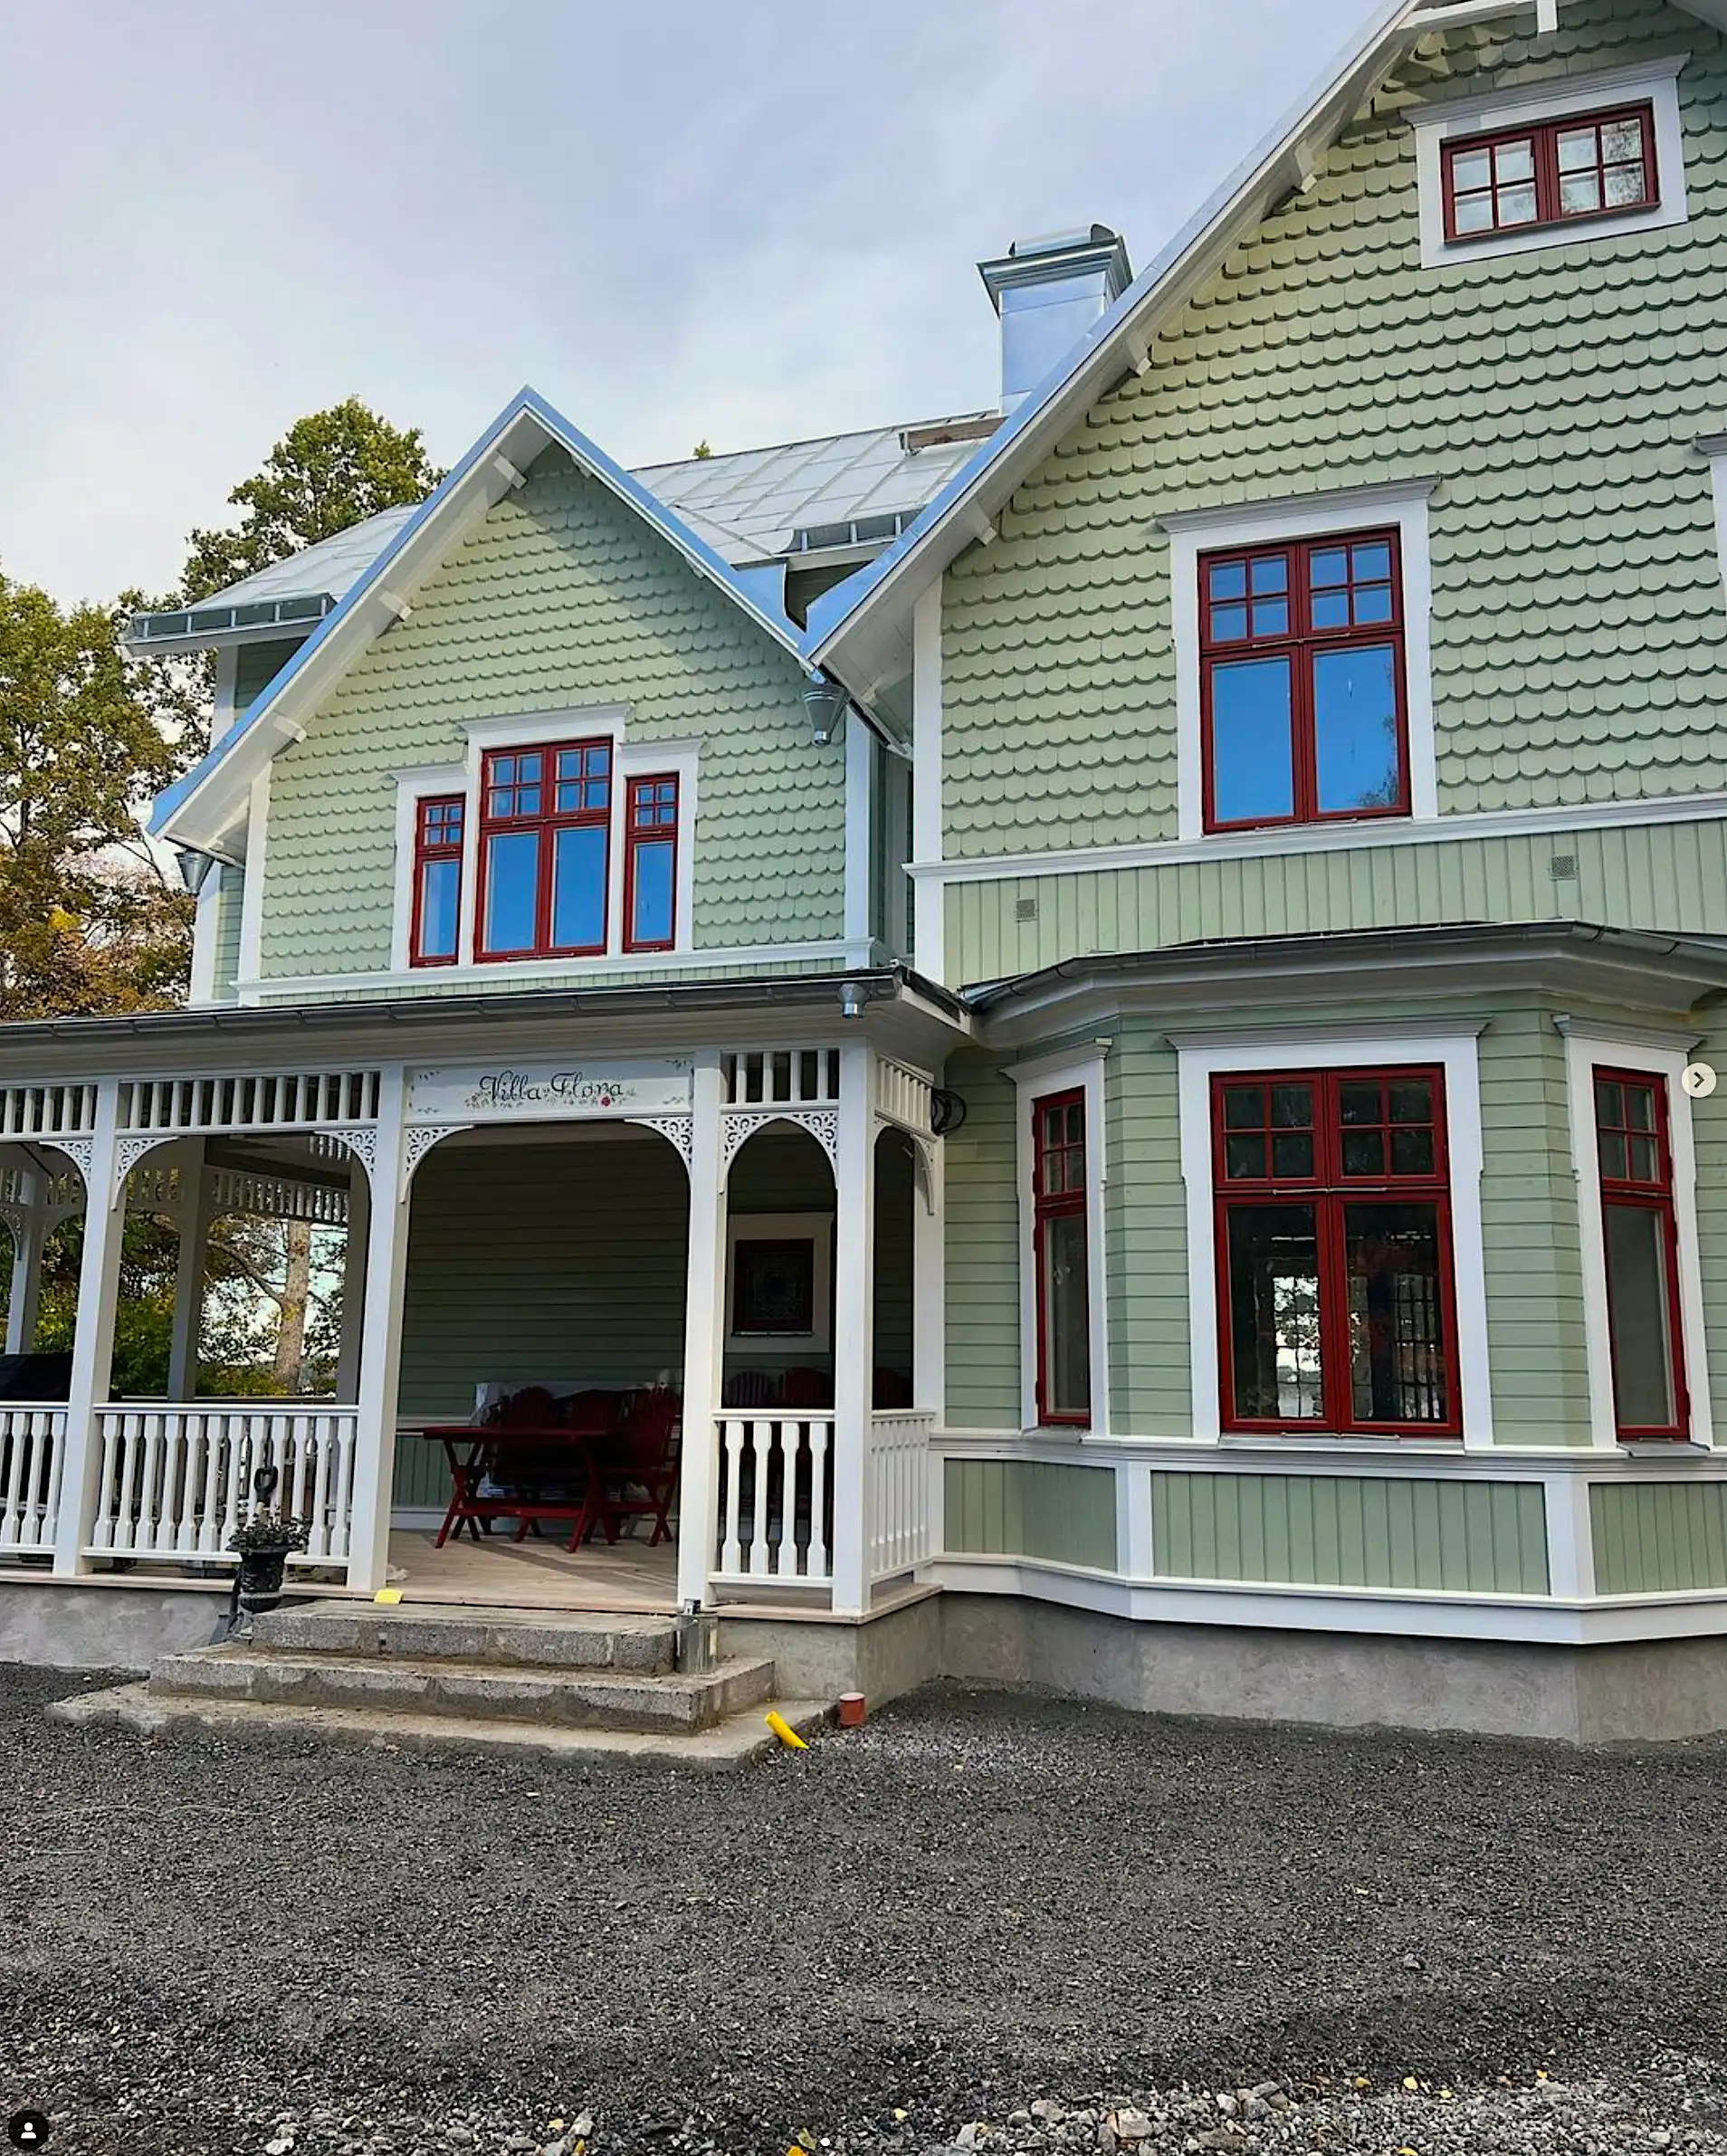 Grünes Haus mit Veranda und viel Schreinerfreude. Holzkonsolen für den Außenbereich, inspiriert vom Jahrhundertwechsel und Jugendstil des 19. Jahrhunderts - Gaveldekor.